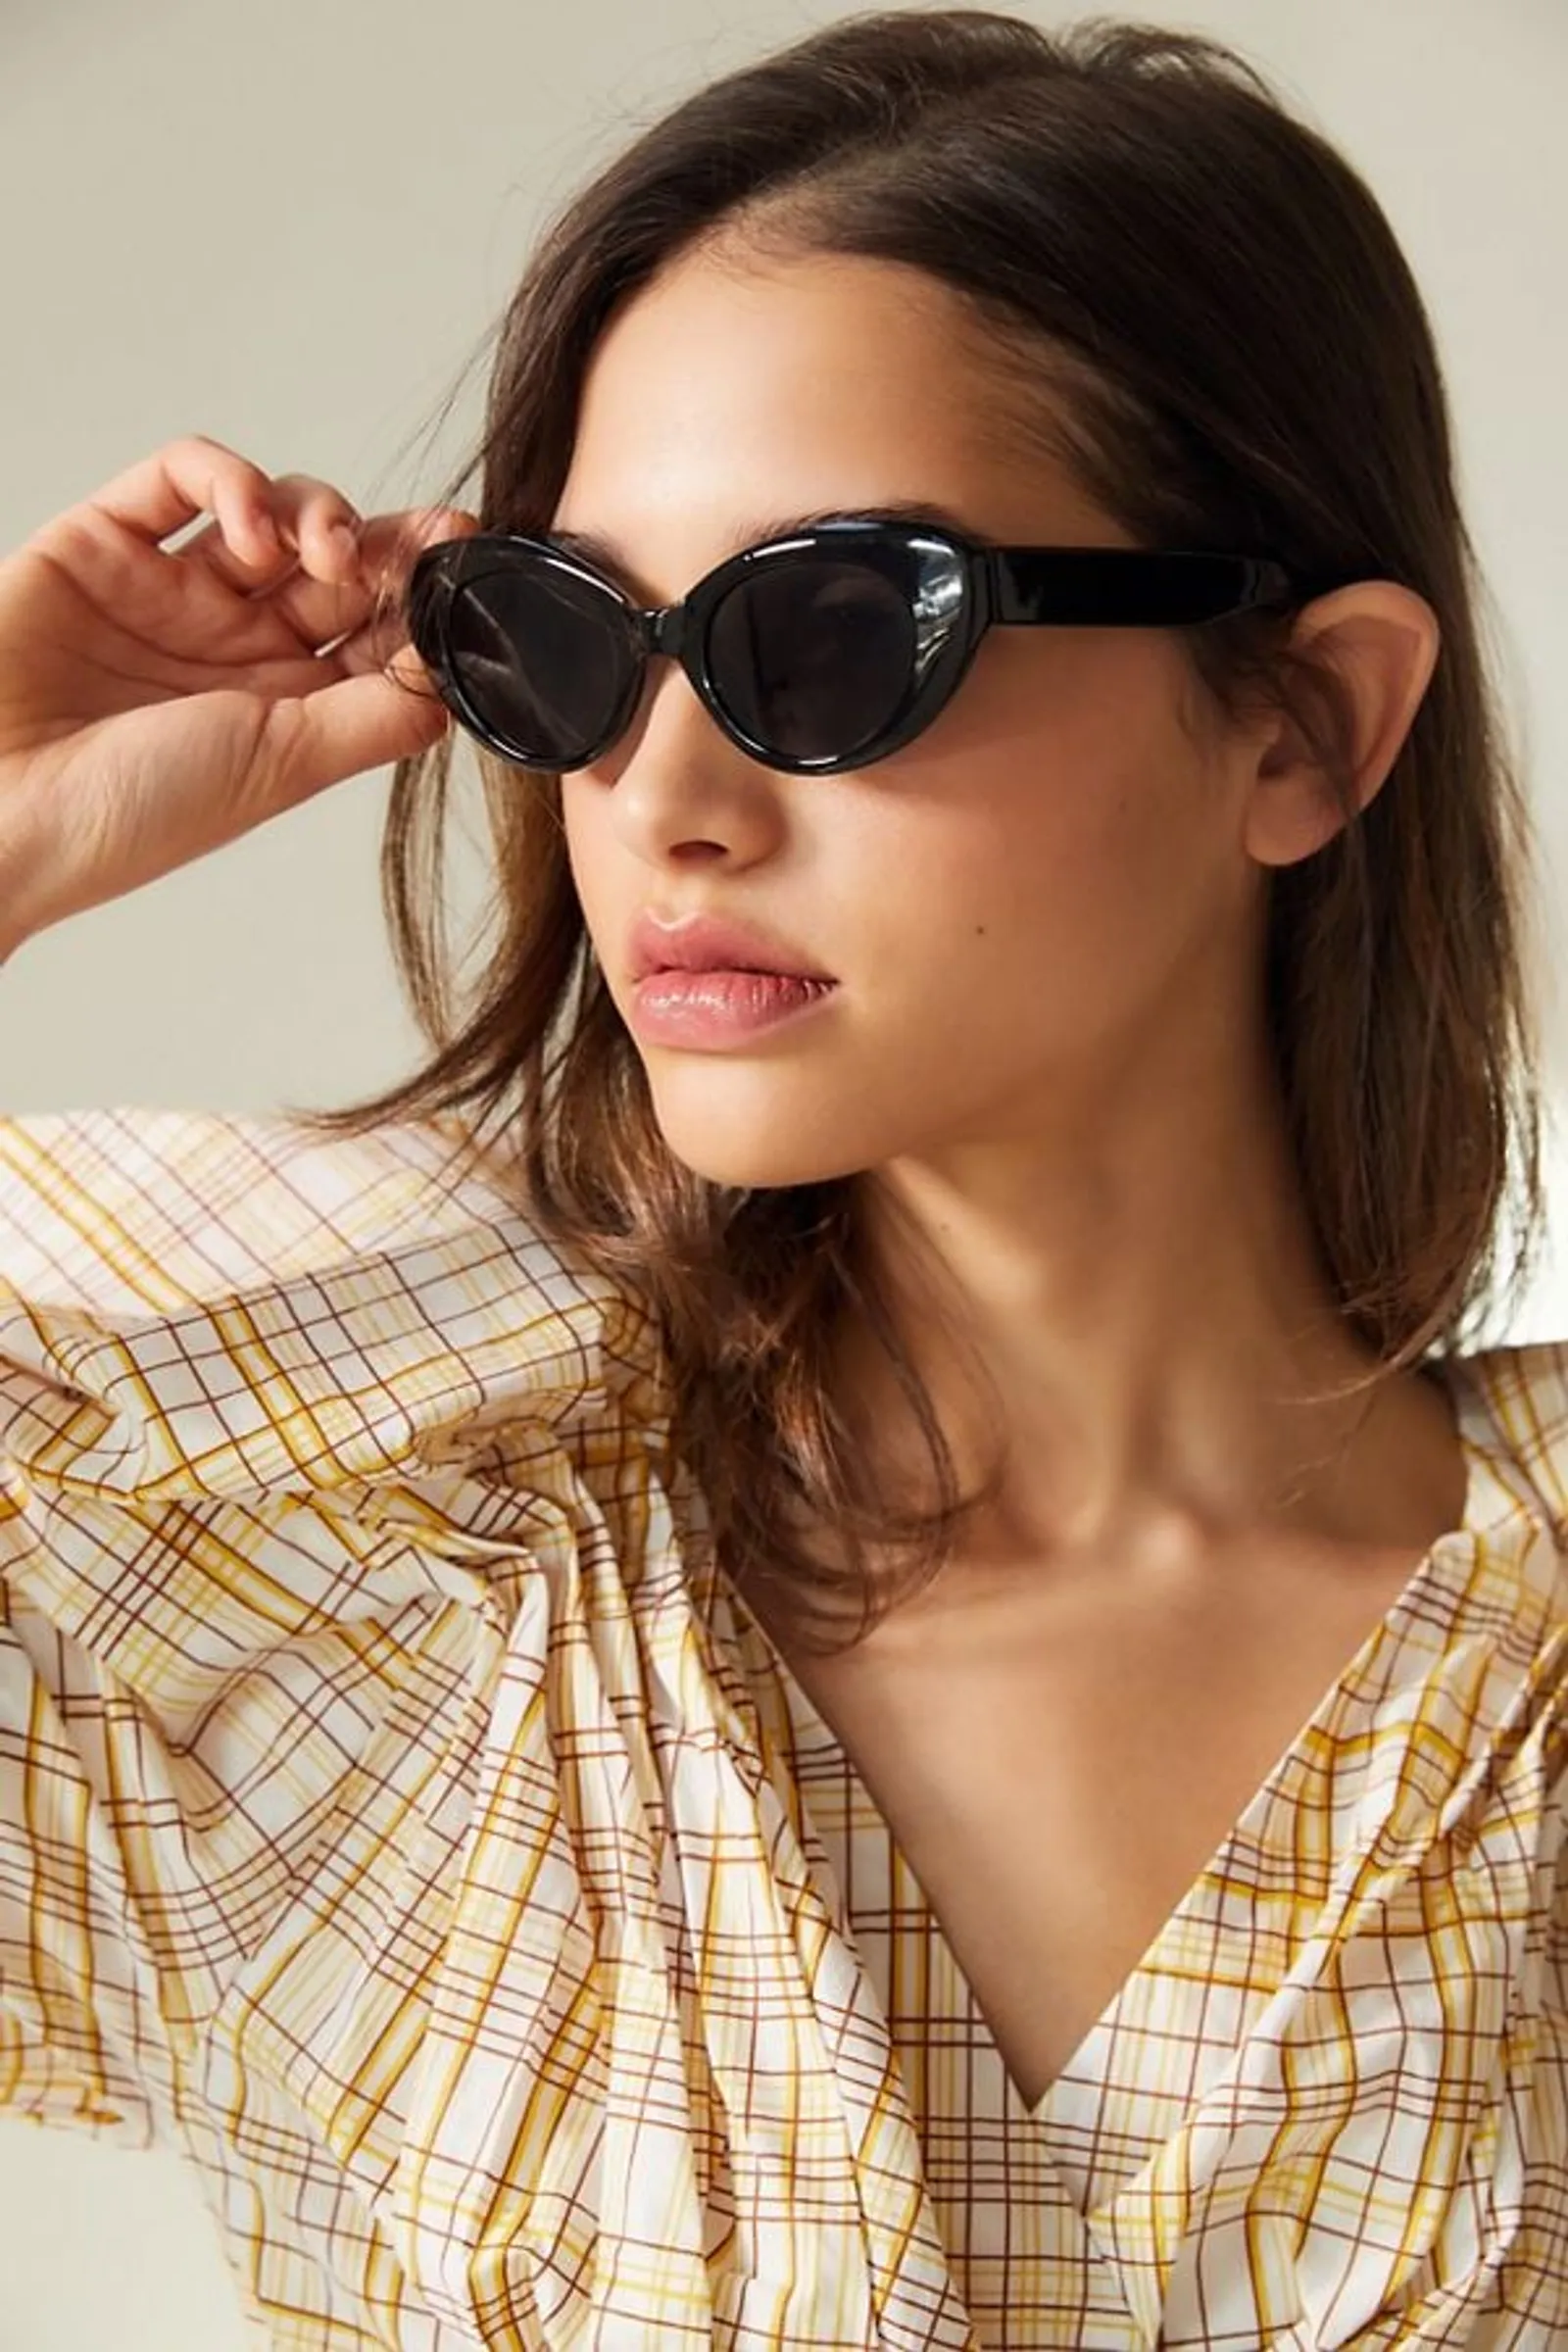 Model Kacamata Hitam Timeless yang Cocok untuk Berbagai Outfit